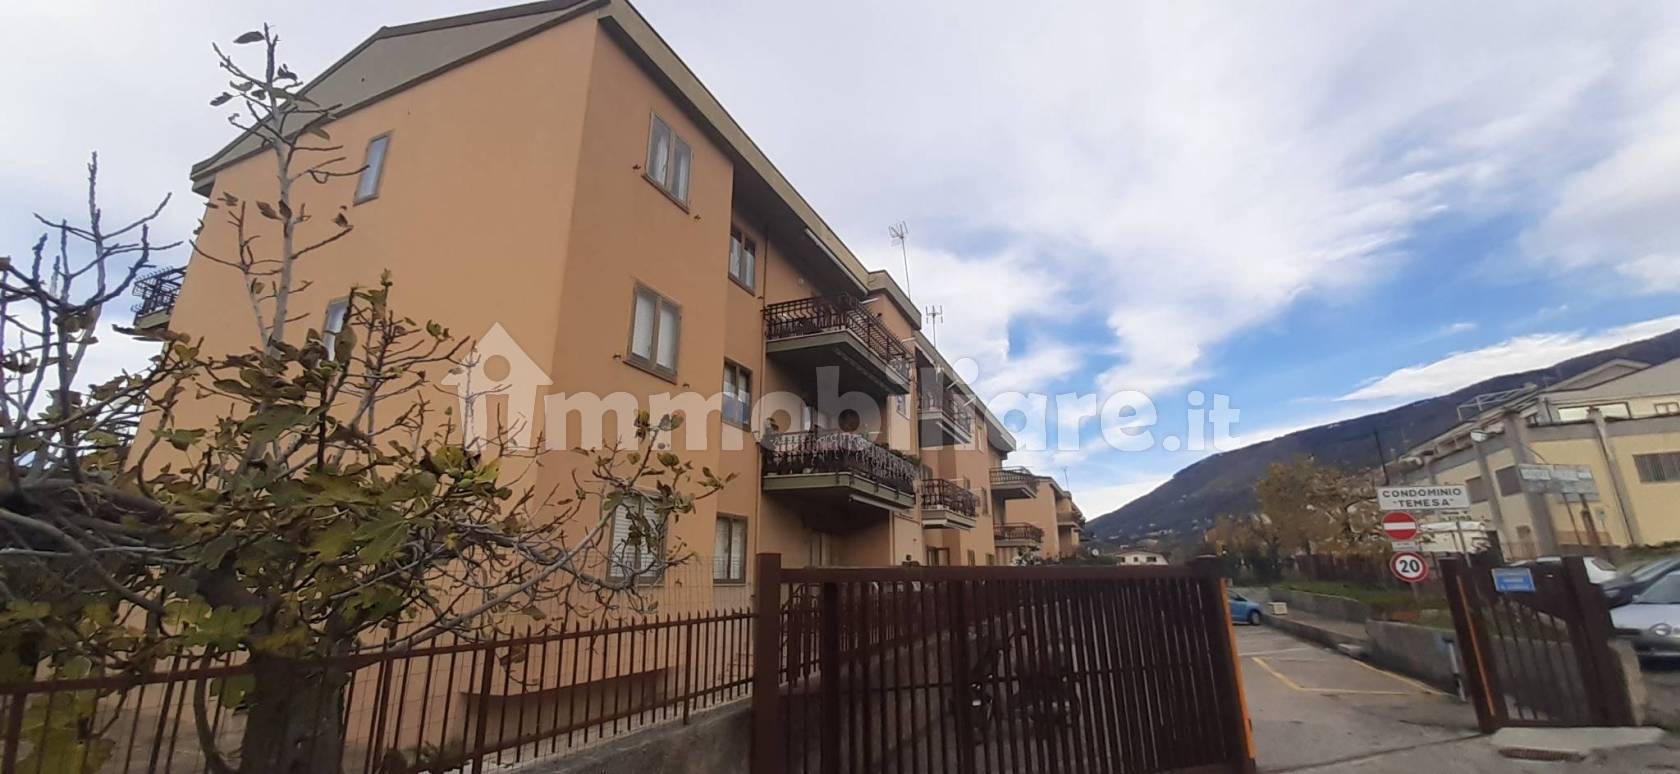 Case in vendita San Lucido - Immobiliare.it